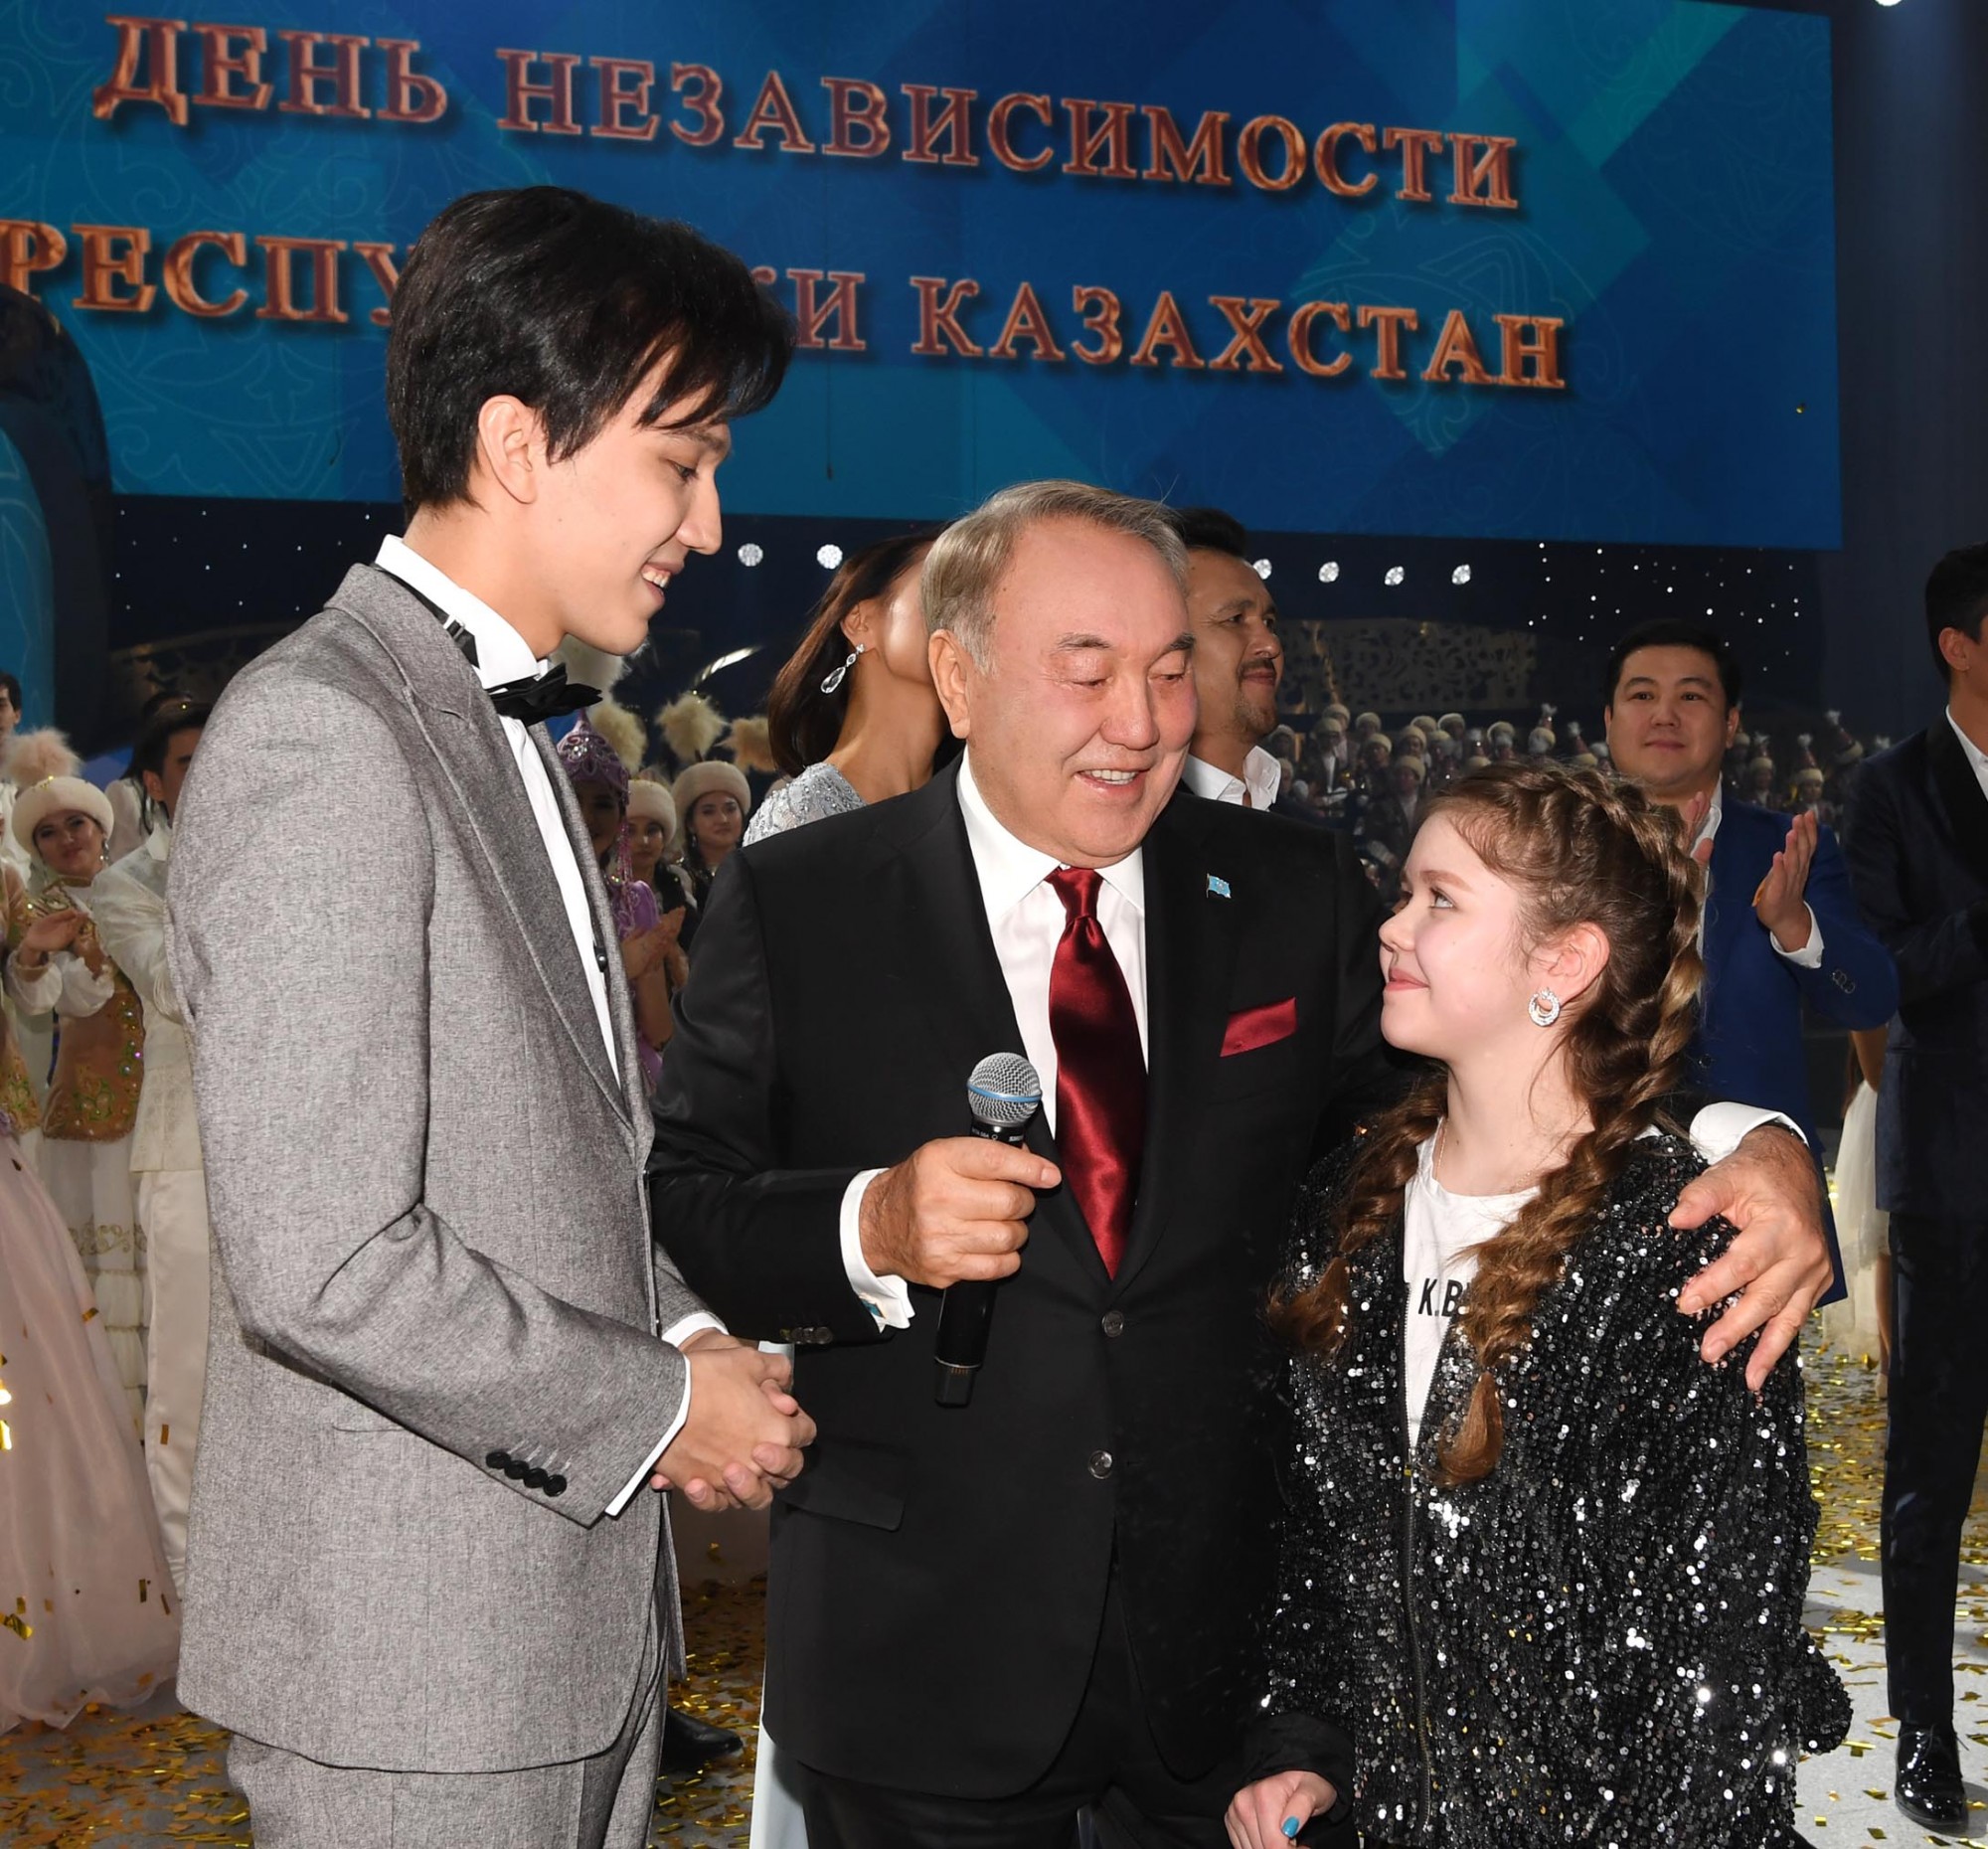 Нурсултан Назарбаев принял участие в торжественном приеме по случаю Дня Независимости Казахстана